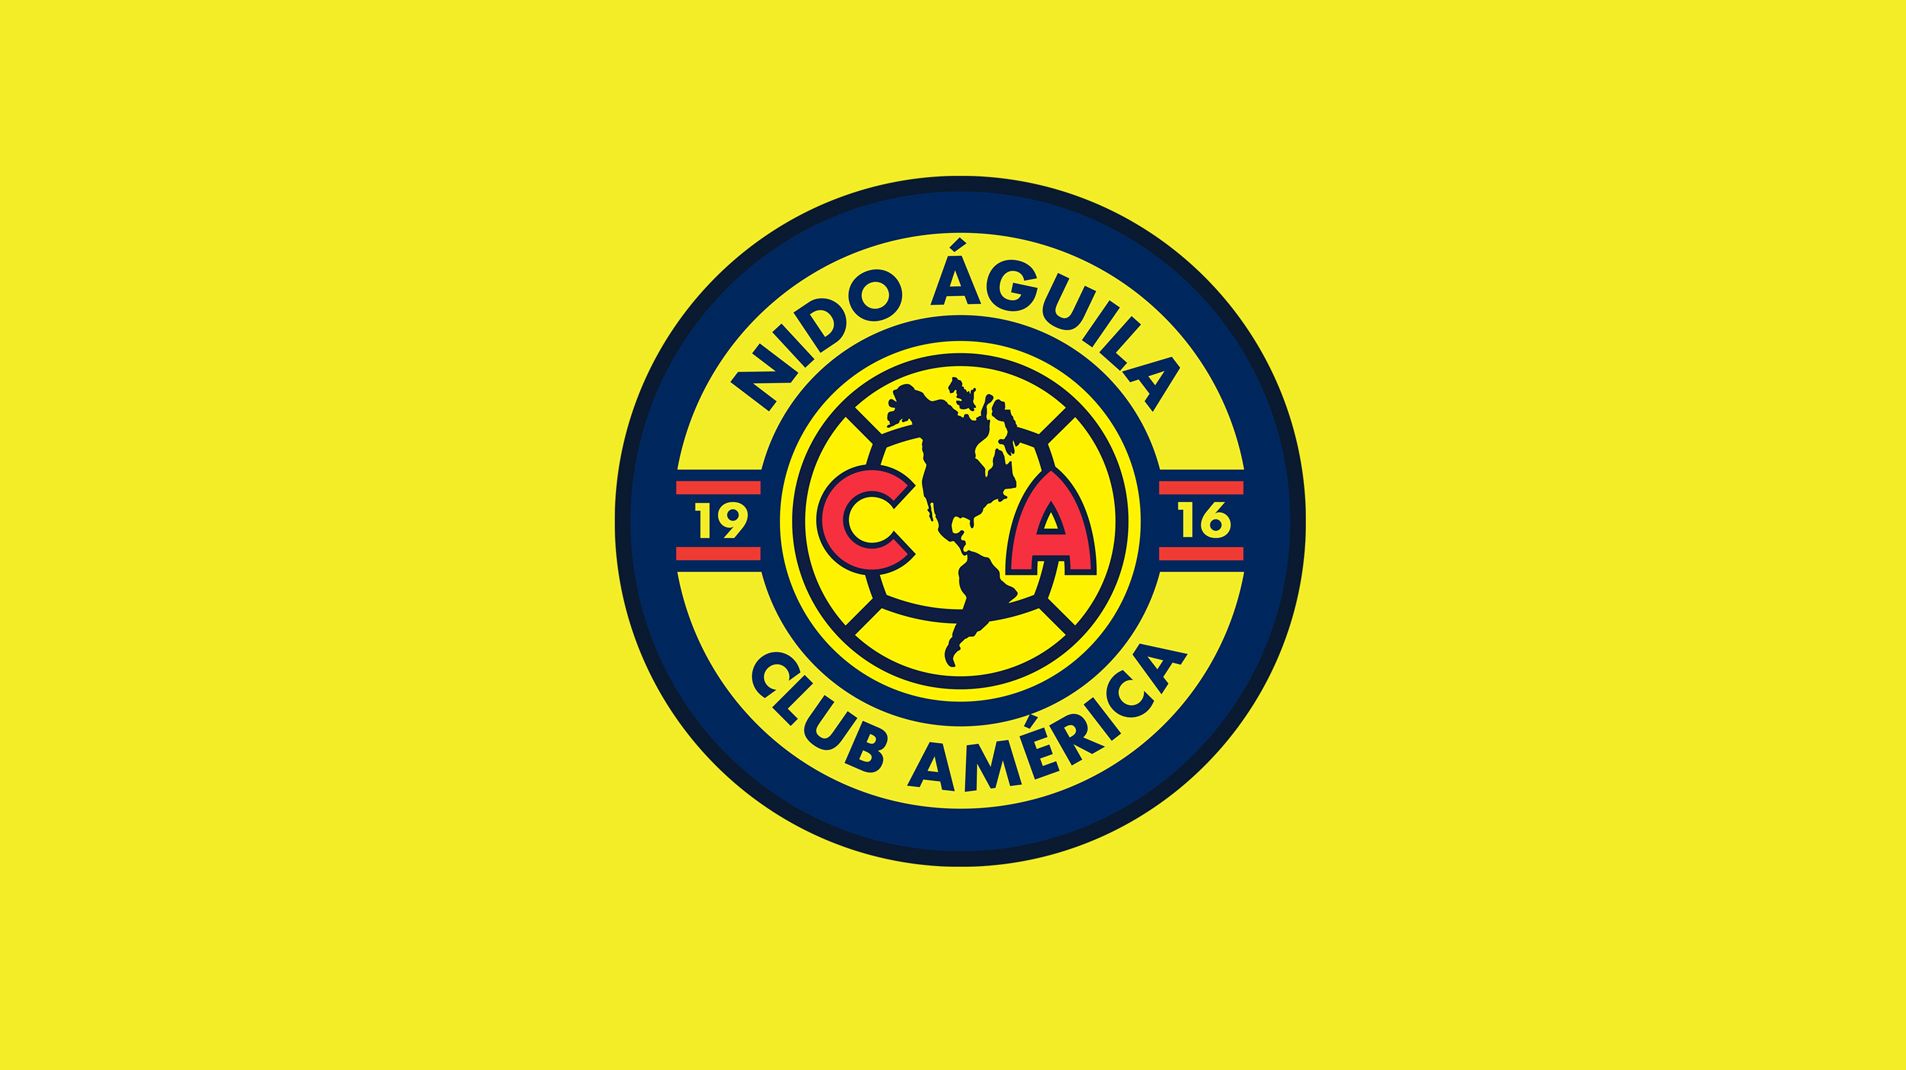 Live - Club América on Livestream